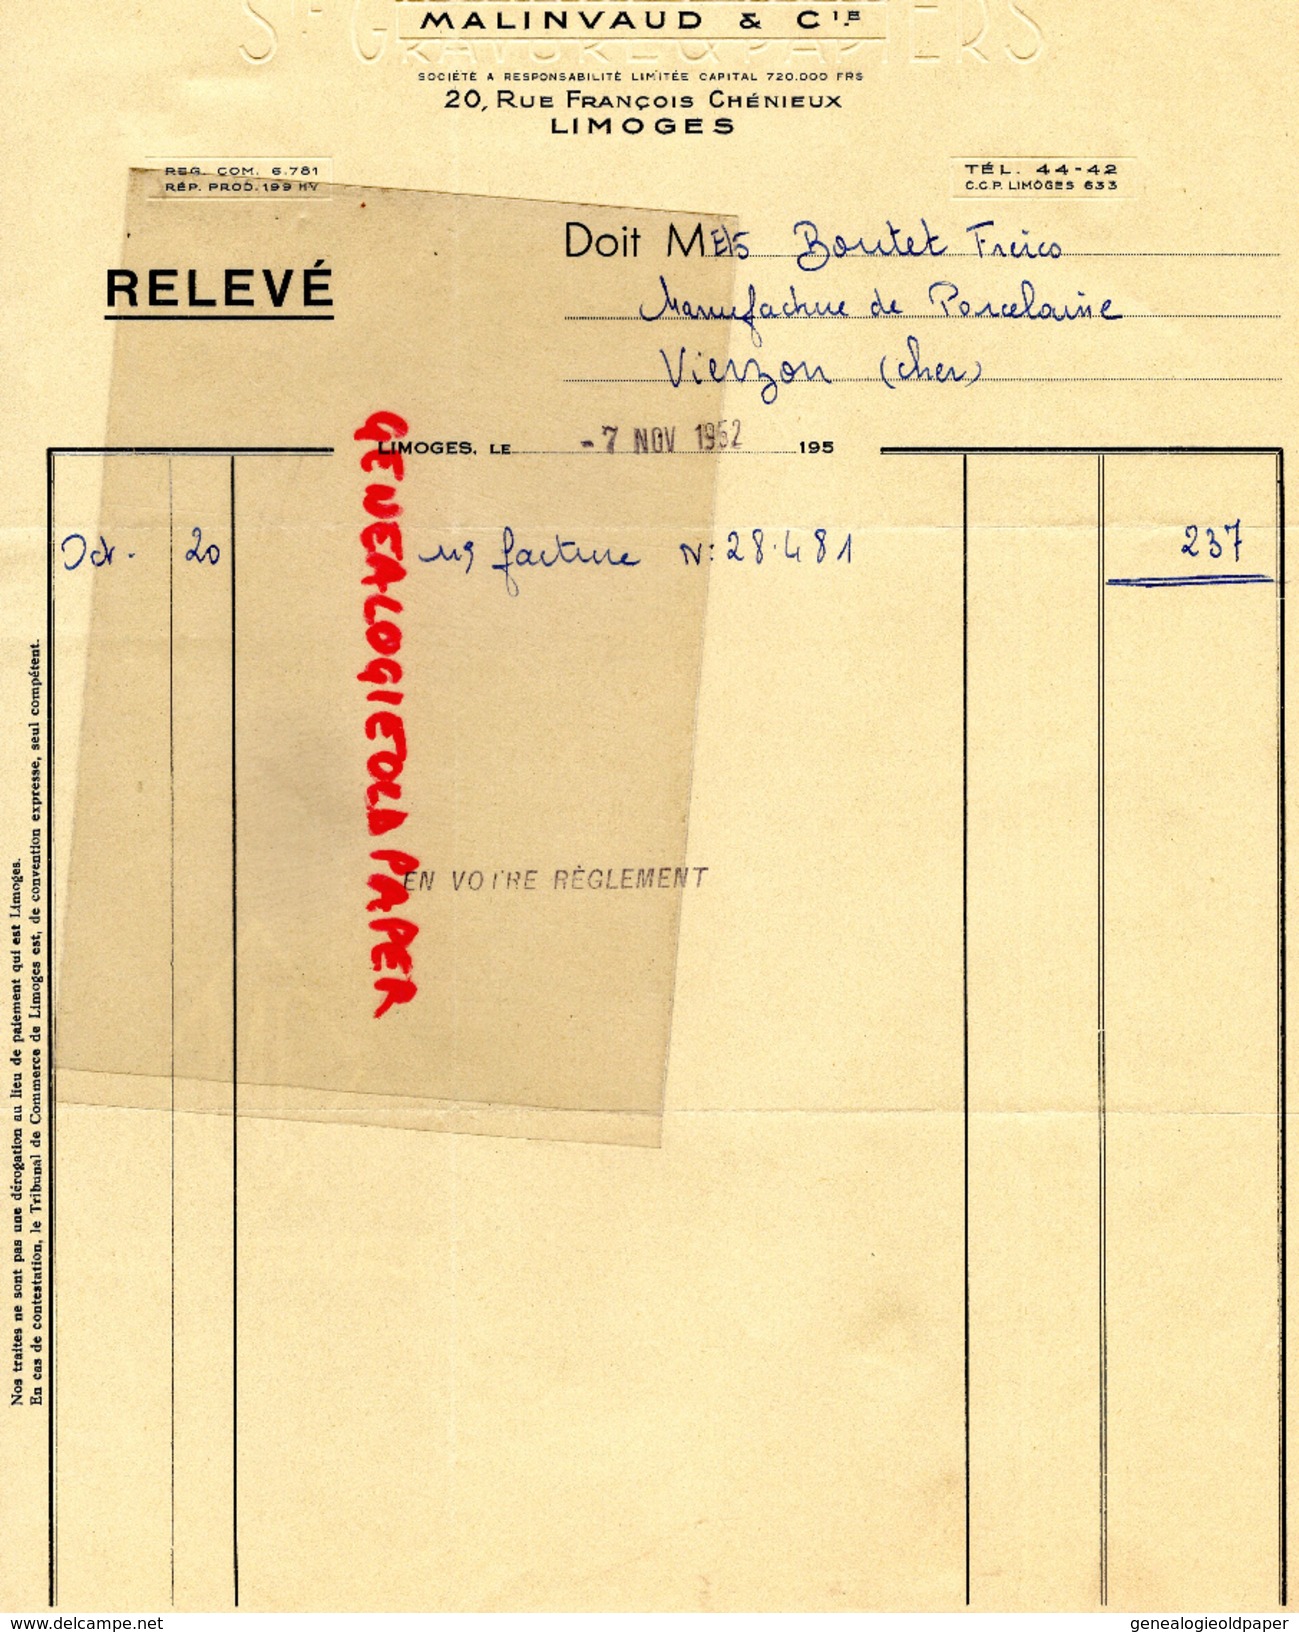 87 - LIMOGES - FACTURE MALINVAUD - IMPRIMERIE GRAVURE -20 RUE FRANCOIS CHENIEUX-1952 - Drukkerij & Papieren